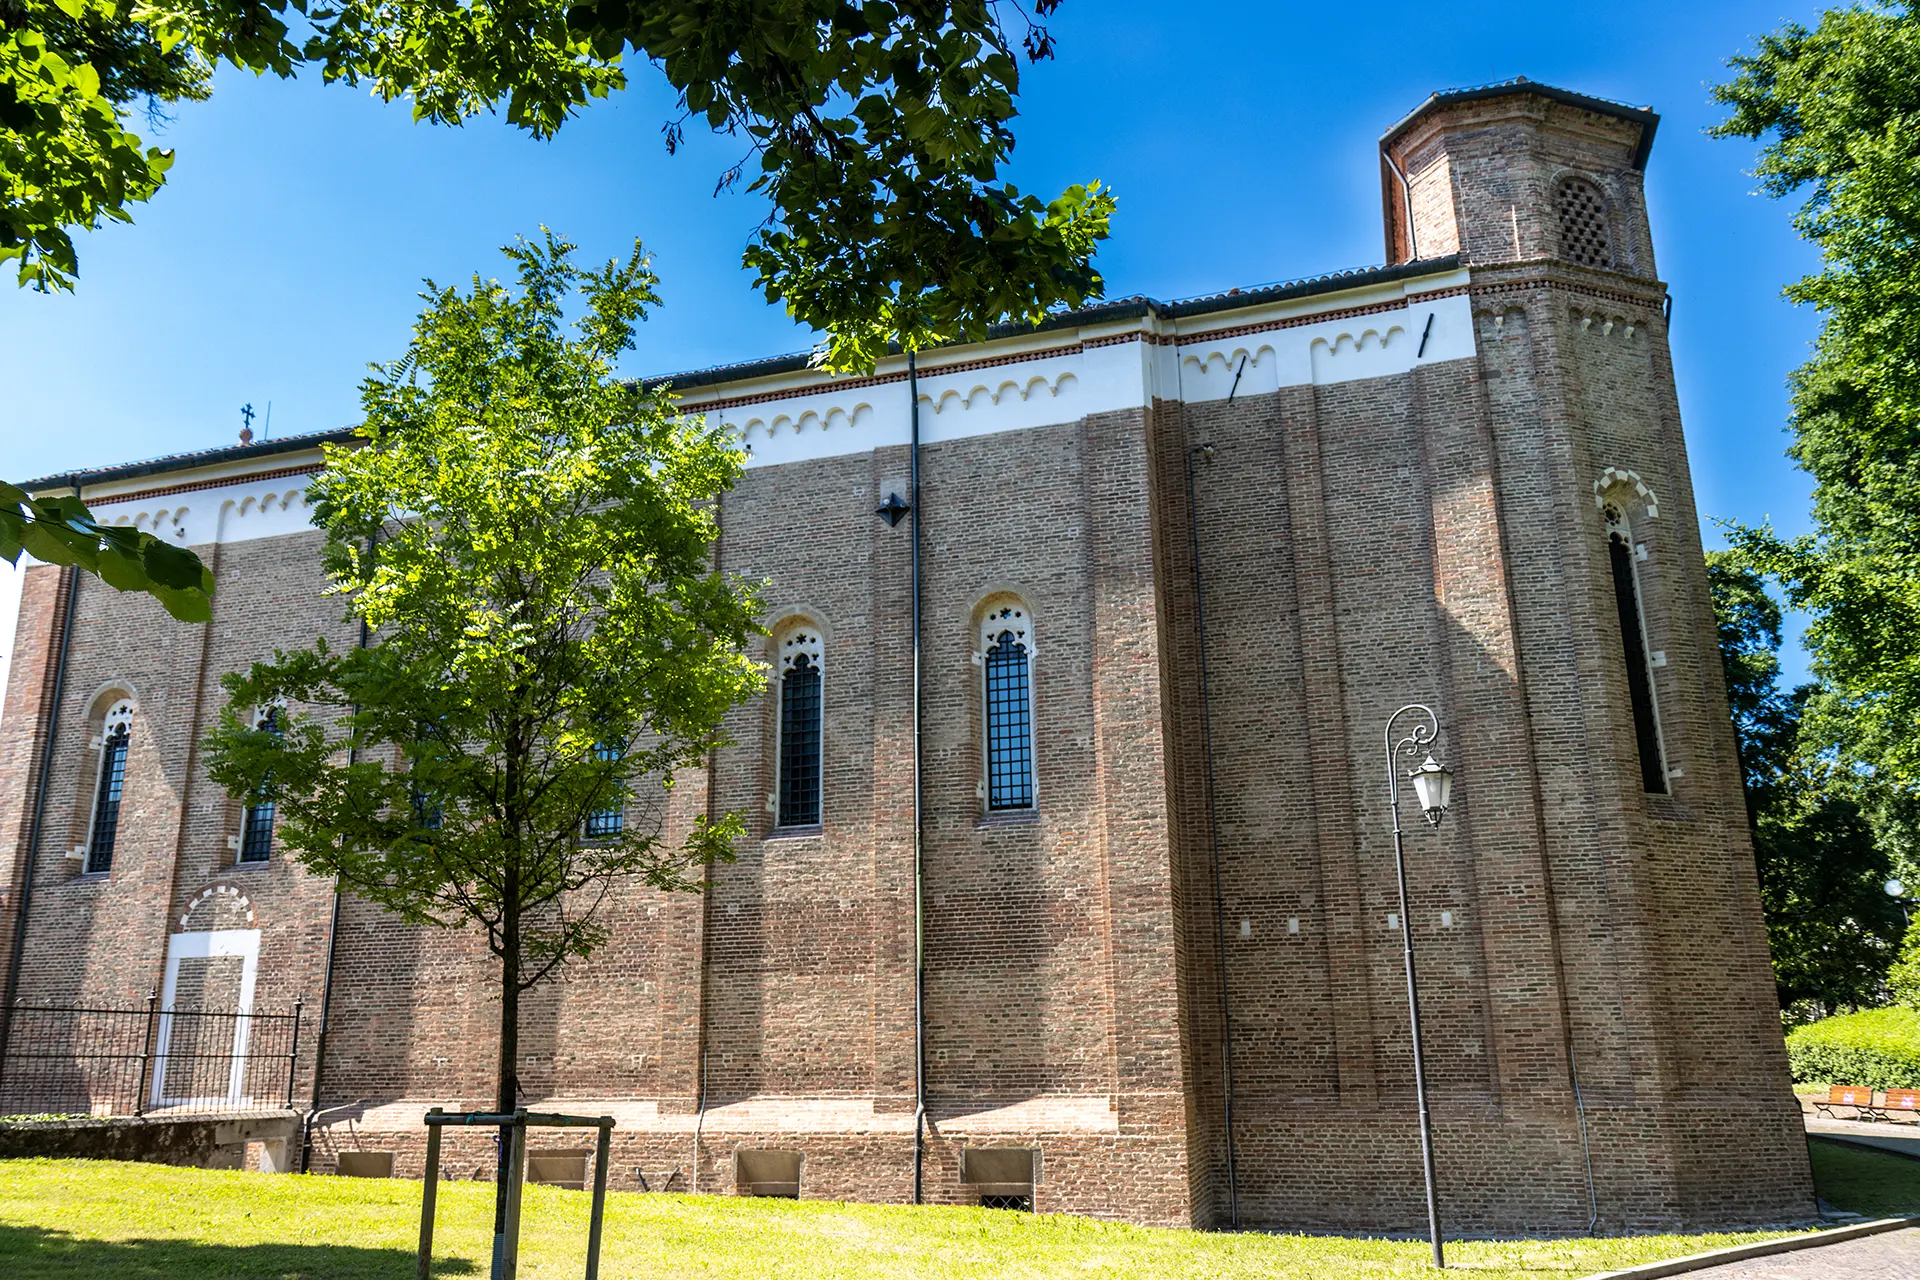 Cosa vedere in un giorno a Padova: la cappella degli Scrovegni